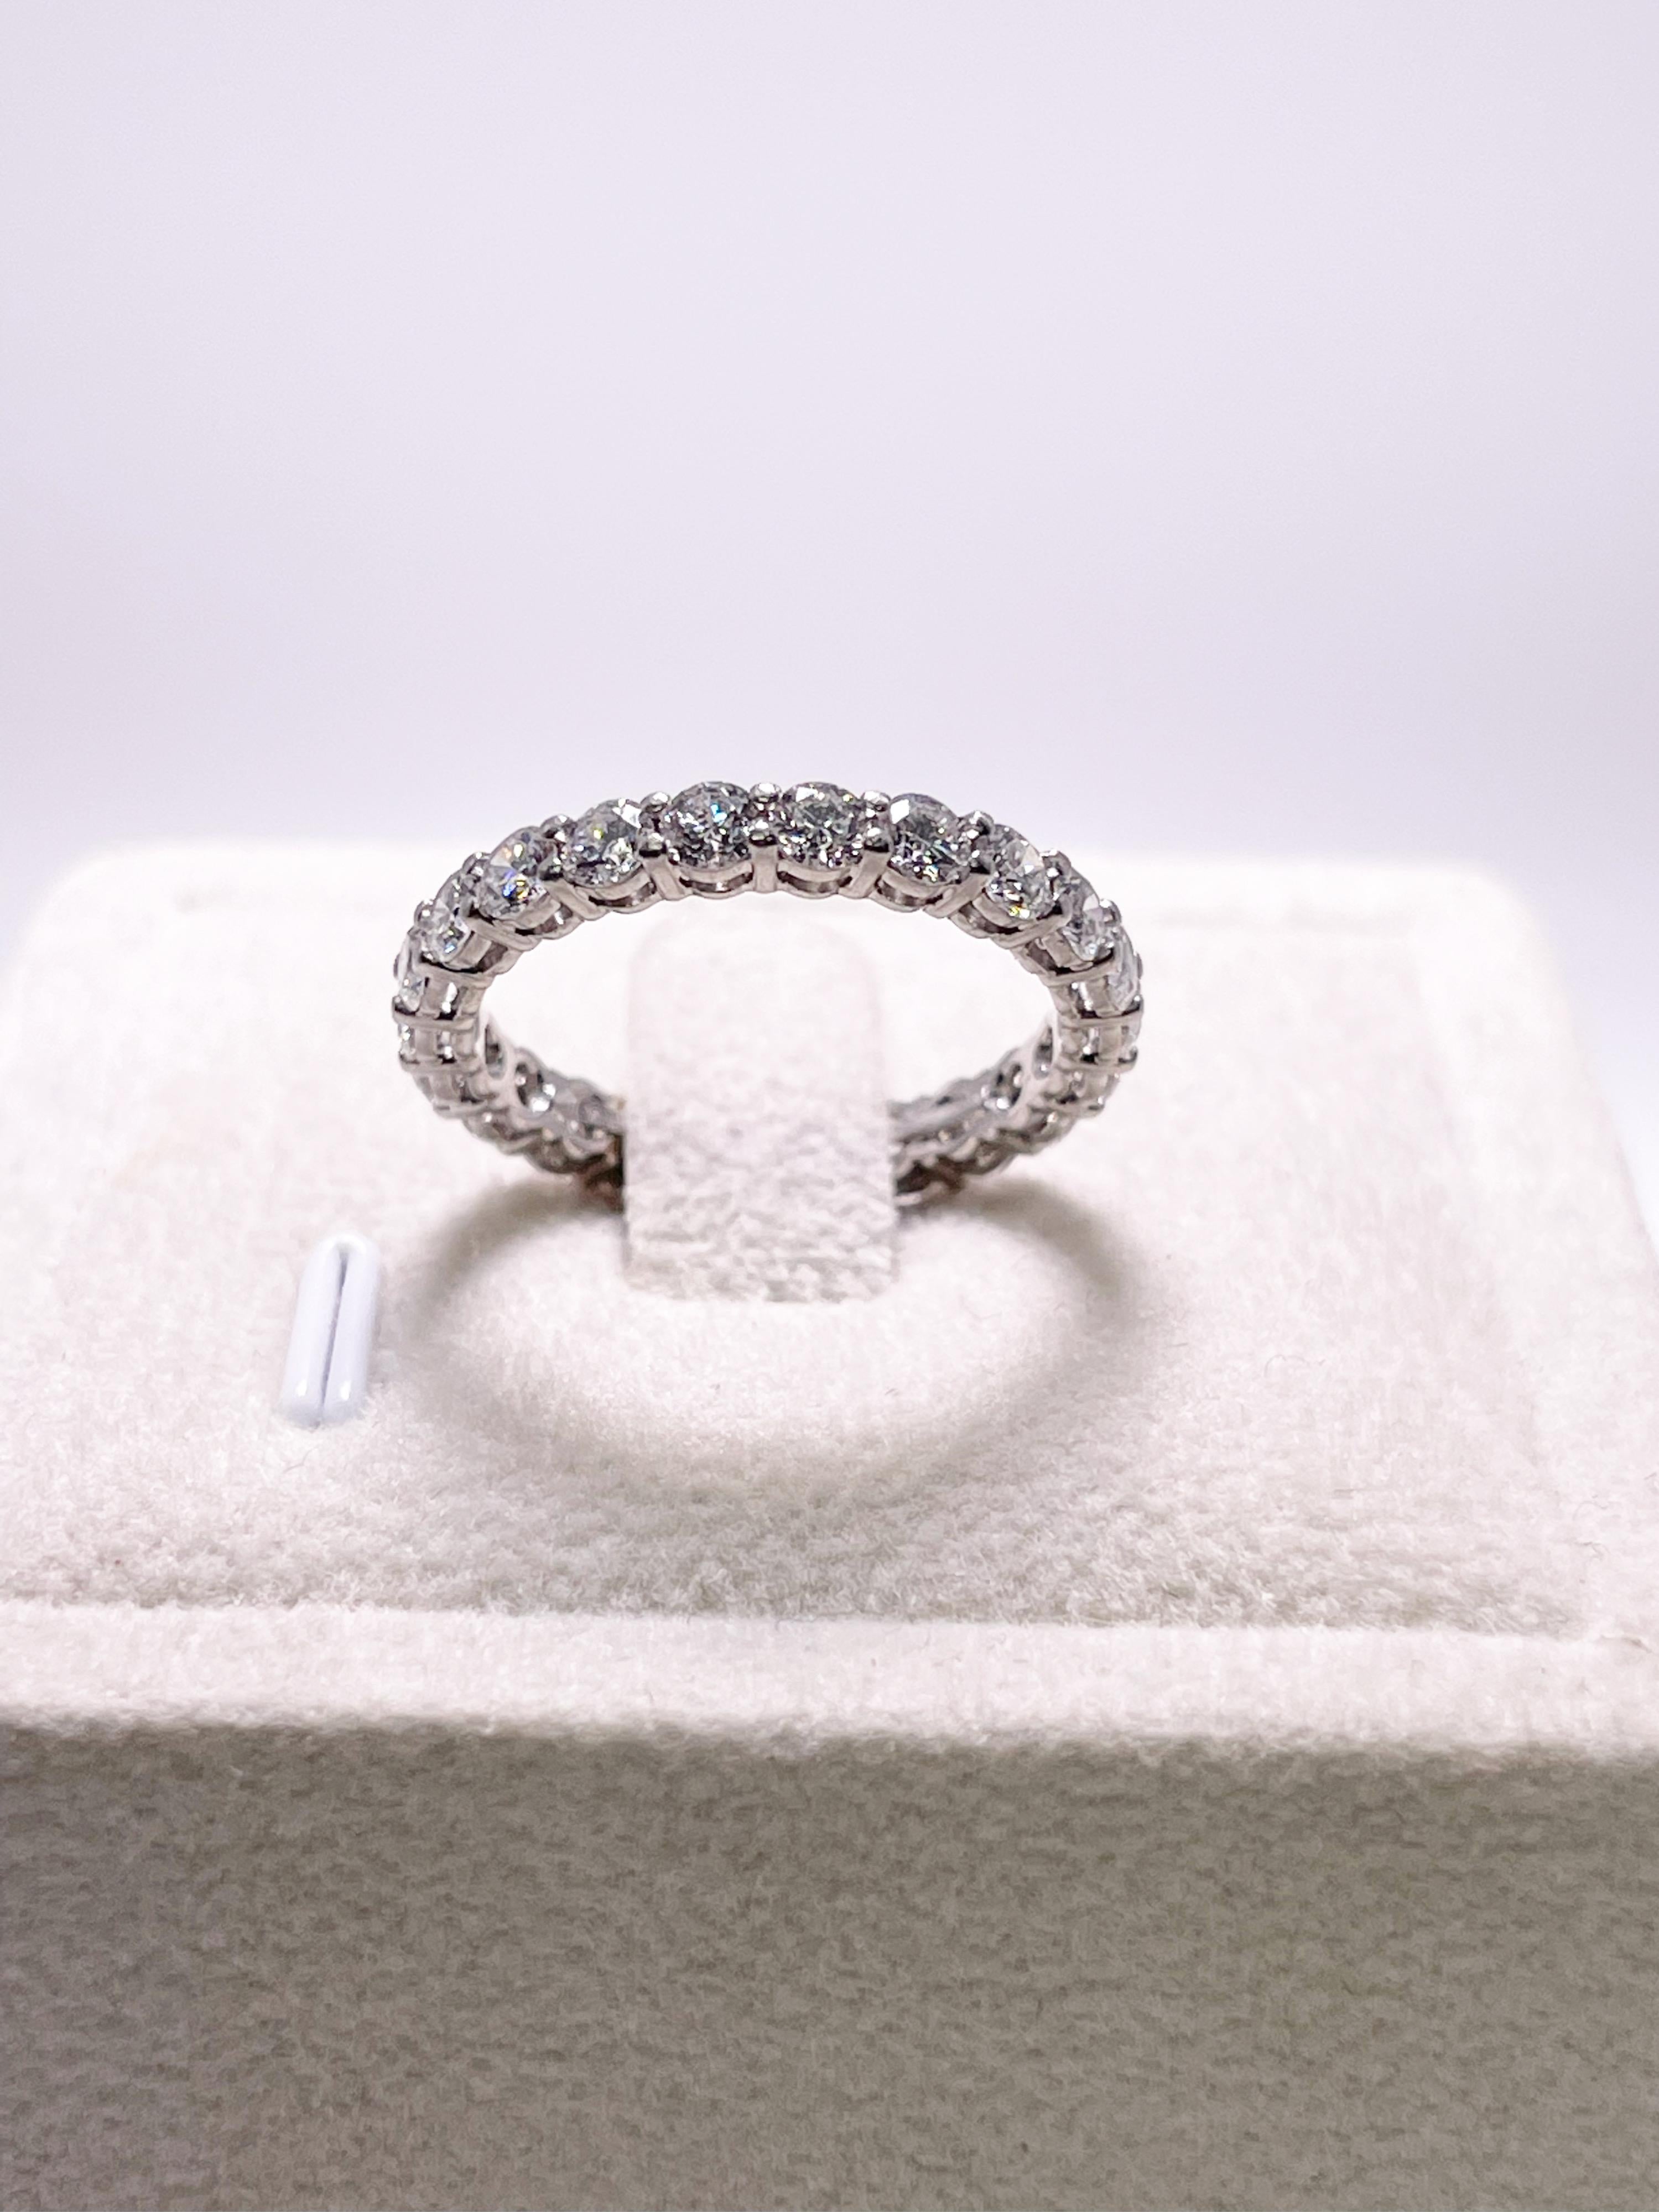 Charmanter Ewigkeitsring von Tiffany & Co. 
Dieser prächtige Tiffany Embrace ist aus Platin mit VVS-Diamanten gefertigt.
Kommt mit original Staubbeutel und Box.
Grammgewicht: 3.34gr
METALL: Platin

natürliche(r) Diamant(e)
Schliff: Runder